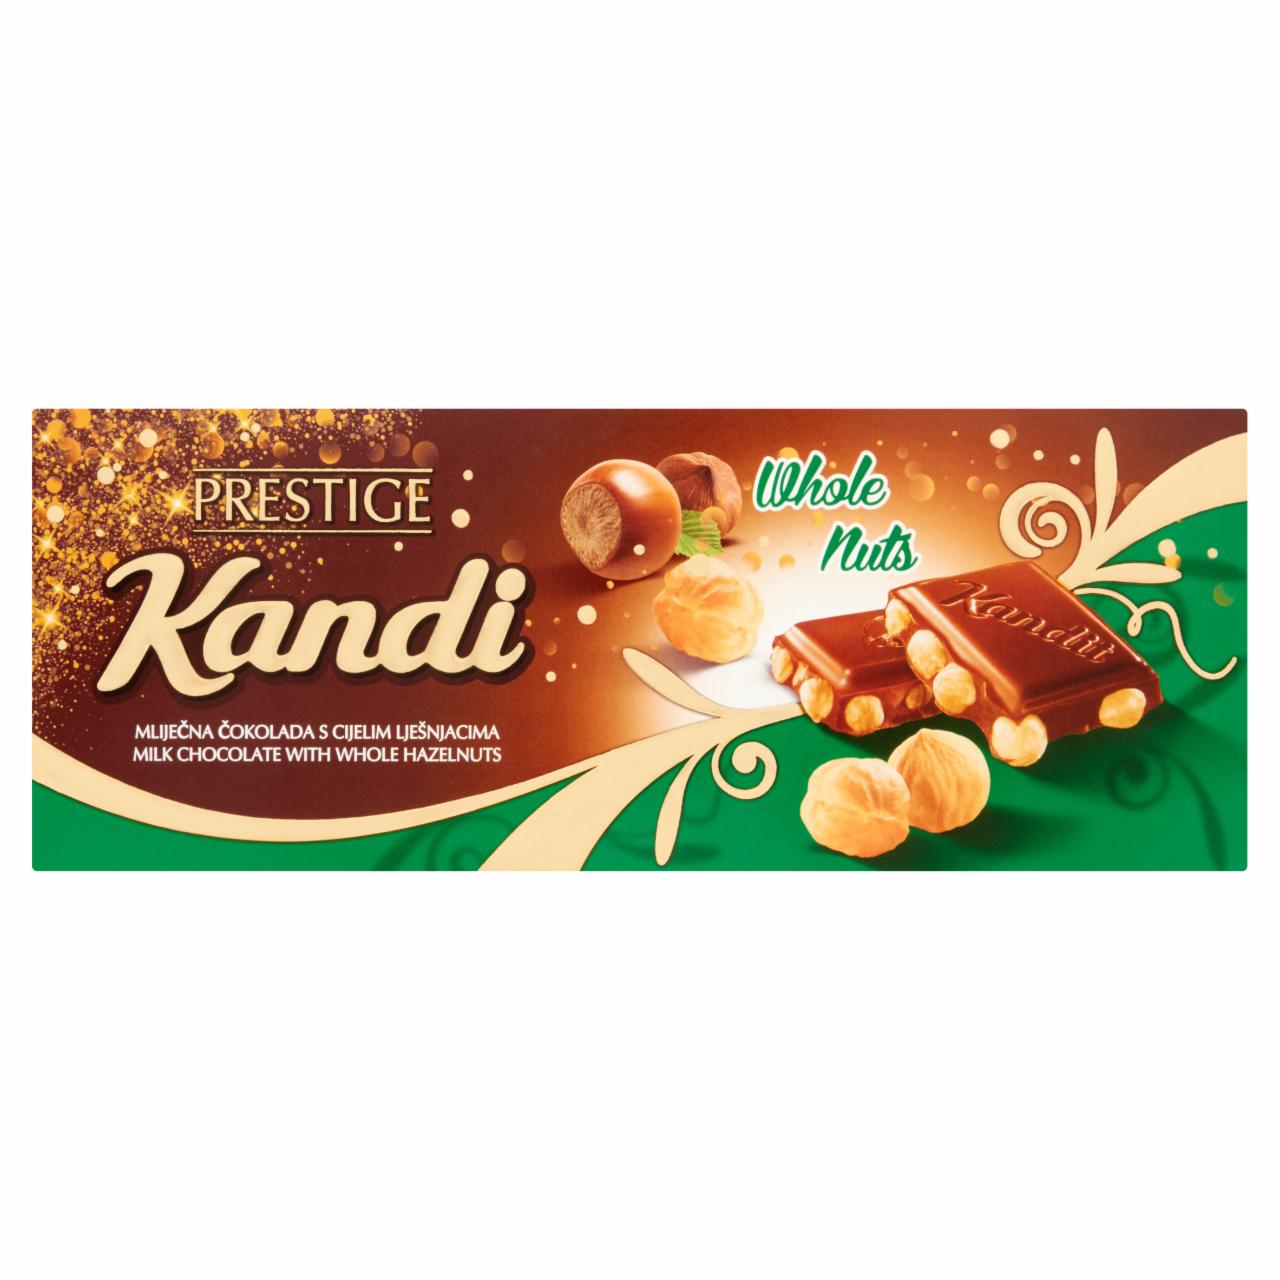 Képek - Kandit mogyorós tejcsokoládé 230 g